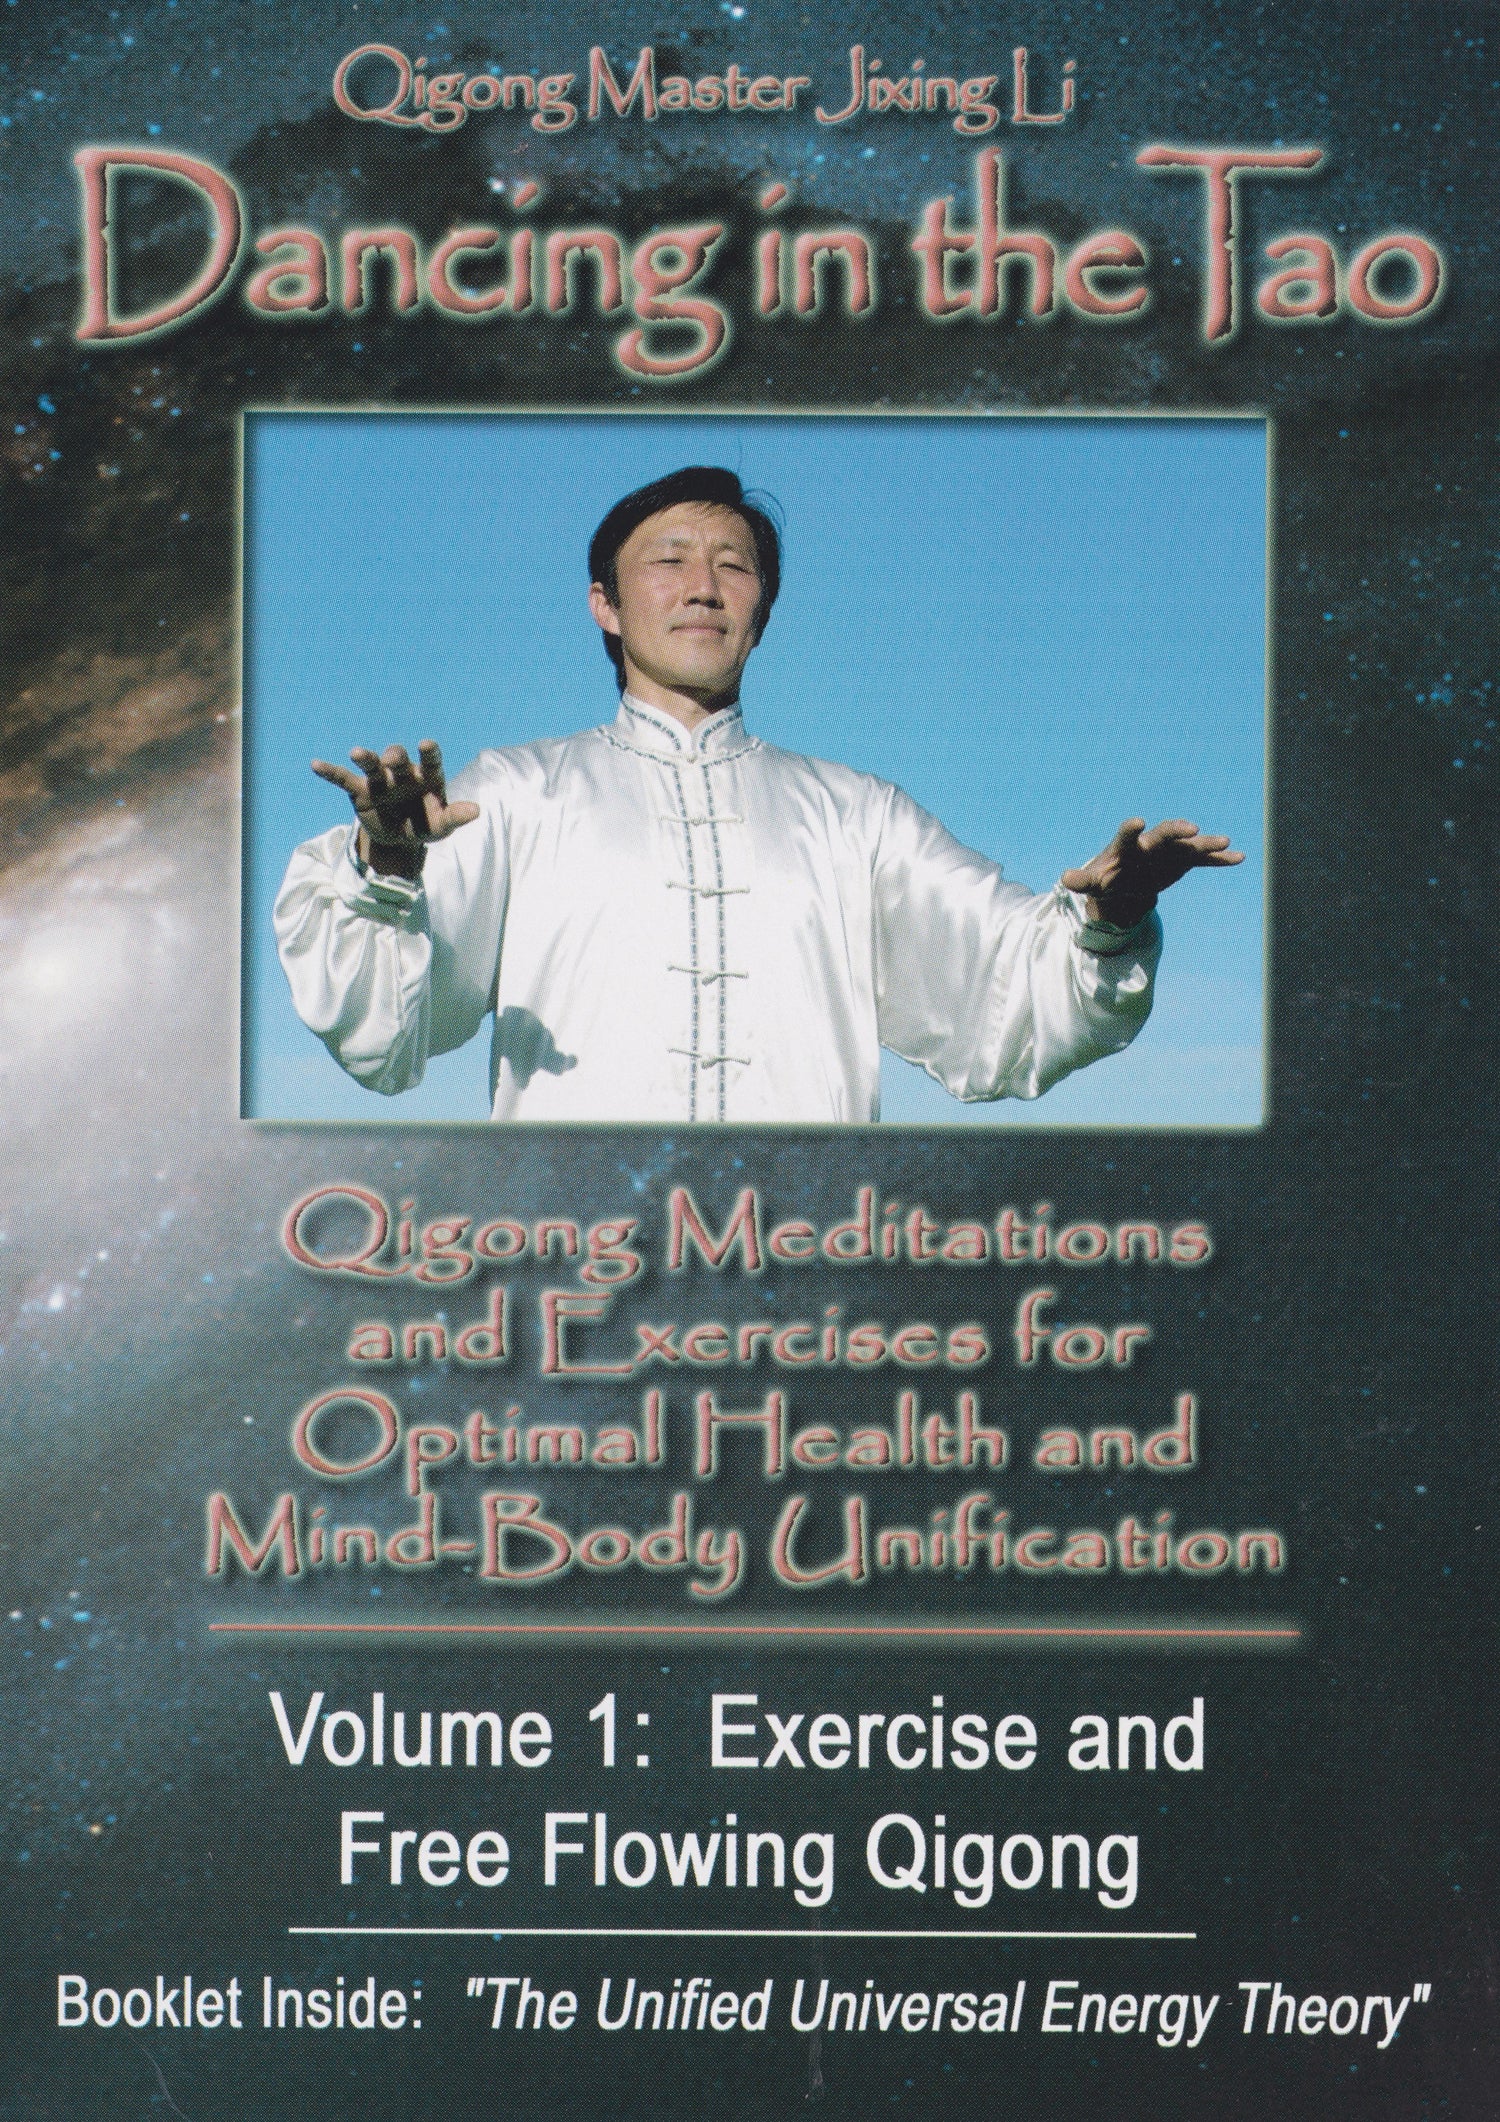 「Dancing in the Tao Qigong」DVD & ブックレット by Jixing Li